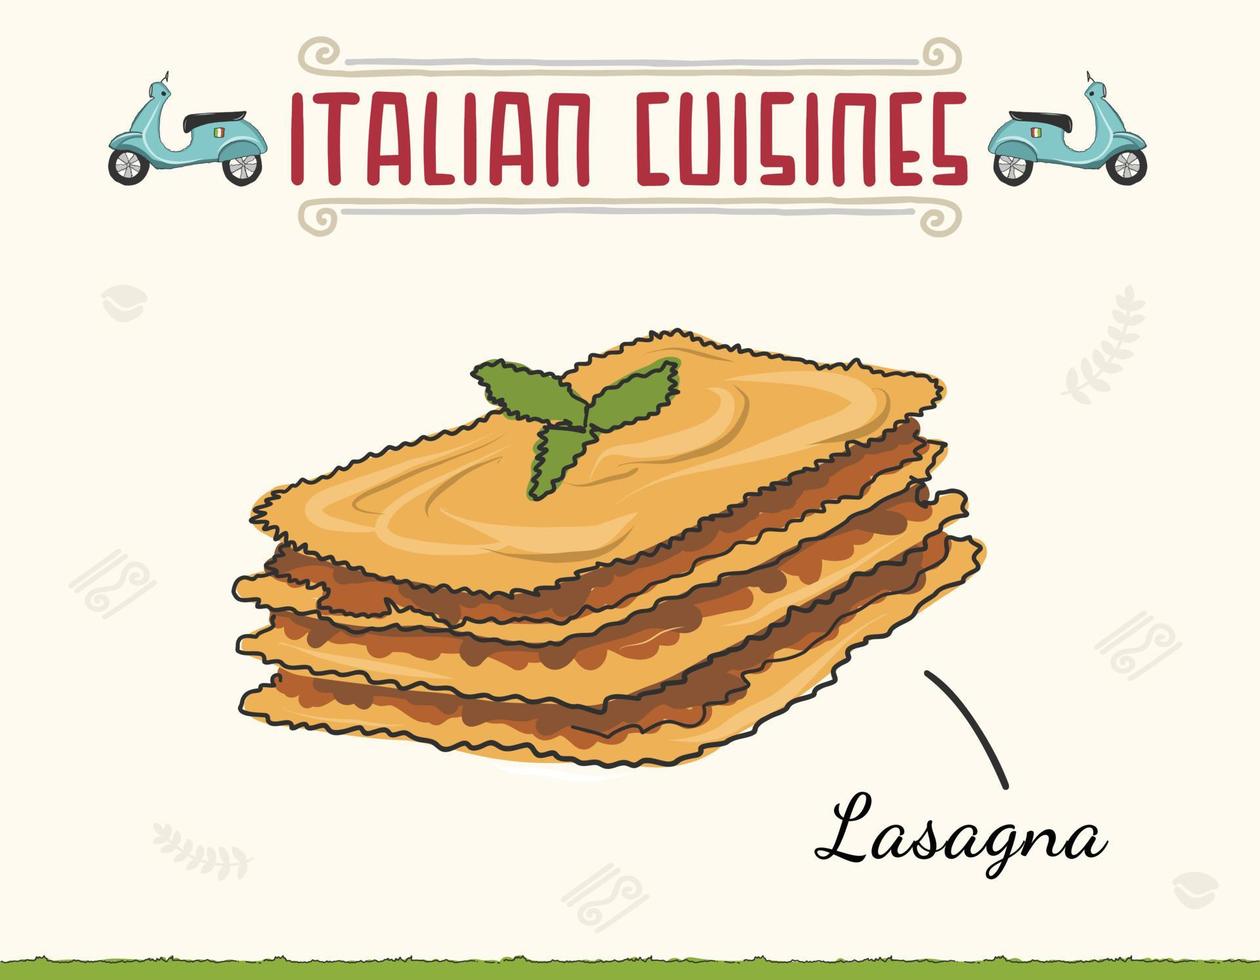 plat de lasagne italienne servi et basilic sur le dessus. cuisine italienne colorée de style gribouillé, plat de lasagnes. illustration vectorielle isolée colorée minimale. vecteur